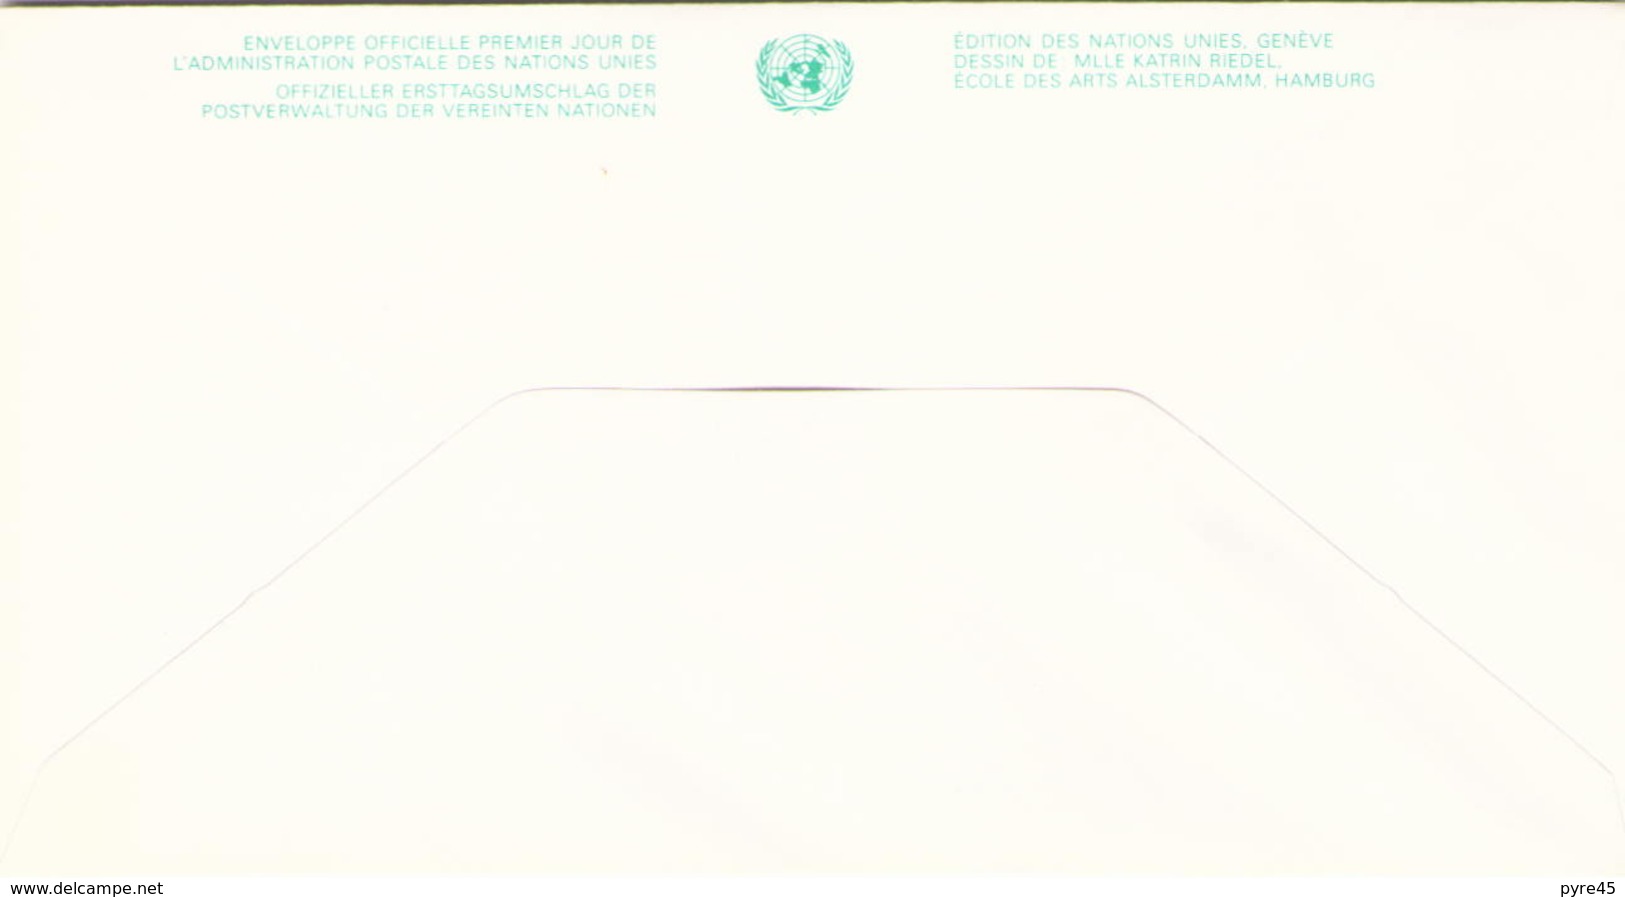 NATIONS UNIES FDC DU 24 OCTOBRE 1991 NEW YORK 40° ANNIVERSAIRE DE L ADMINISTRATION POSTALE DES NATIONS UNIES - Covers & Documents